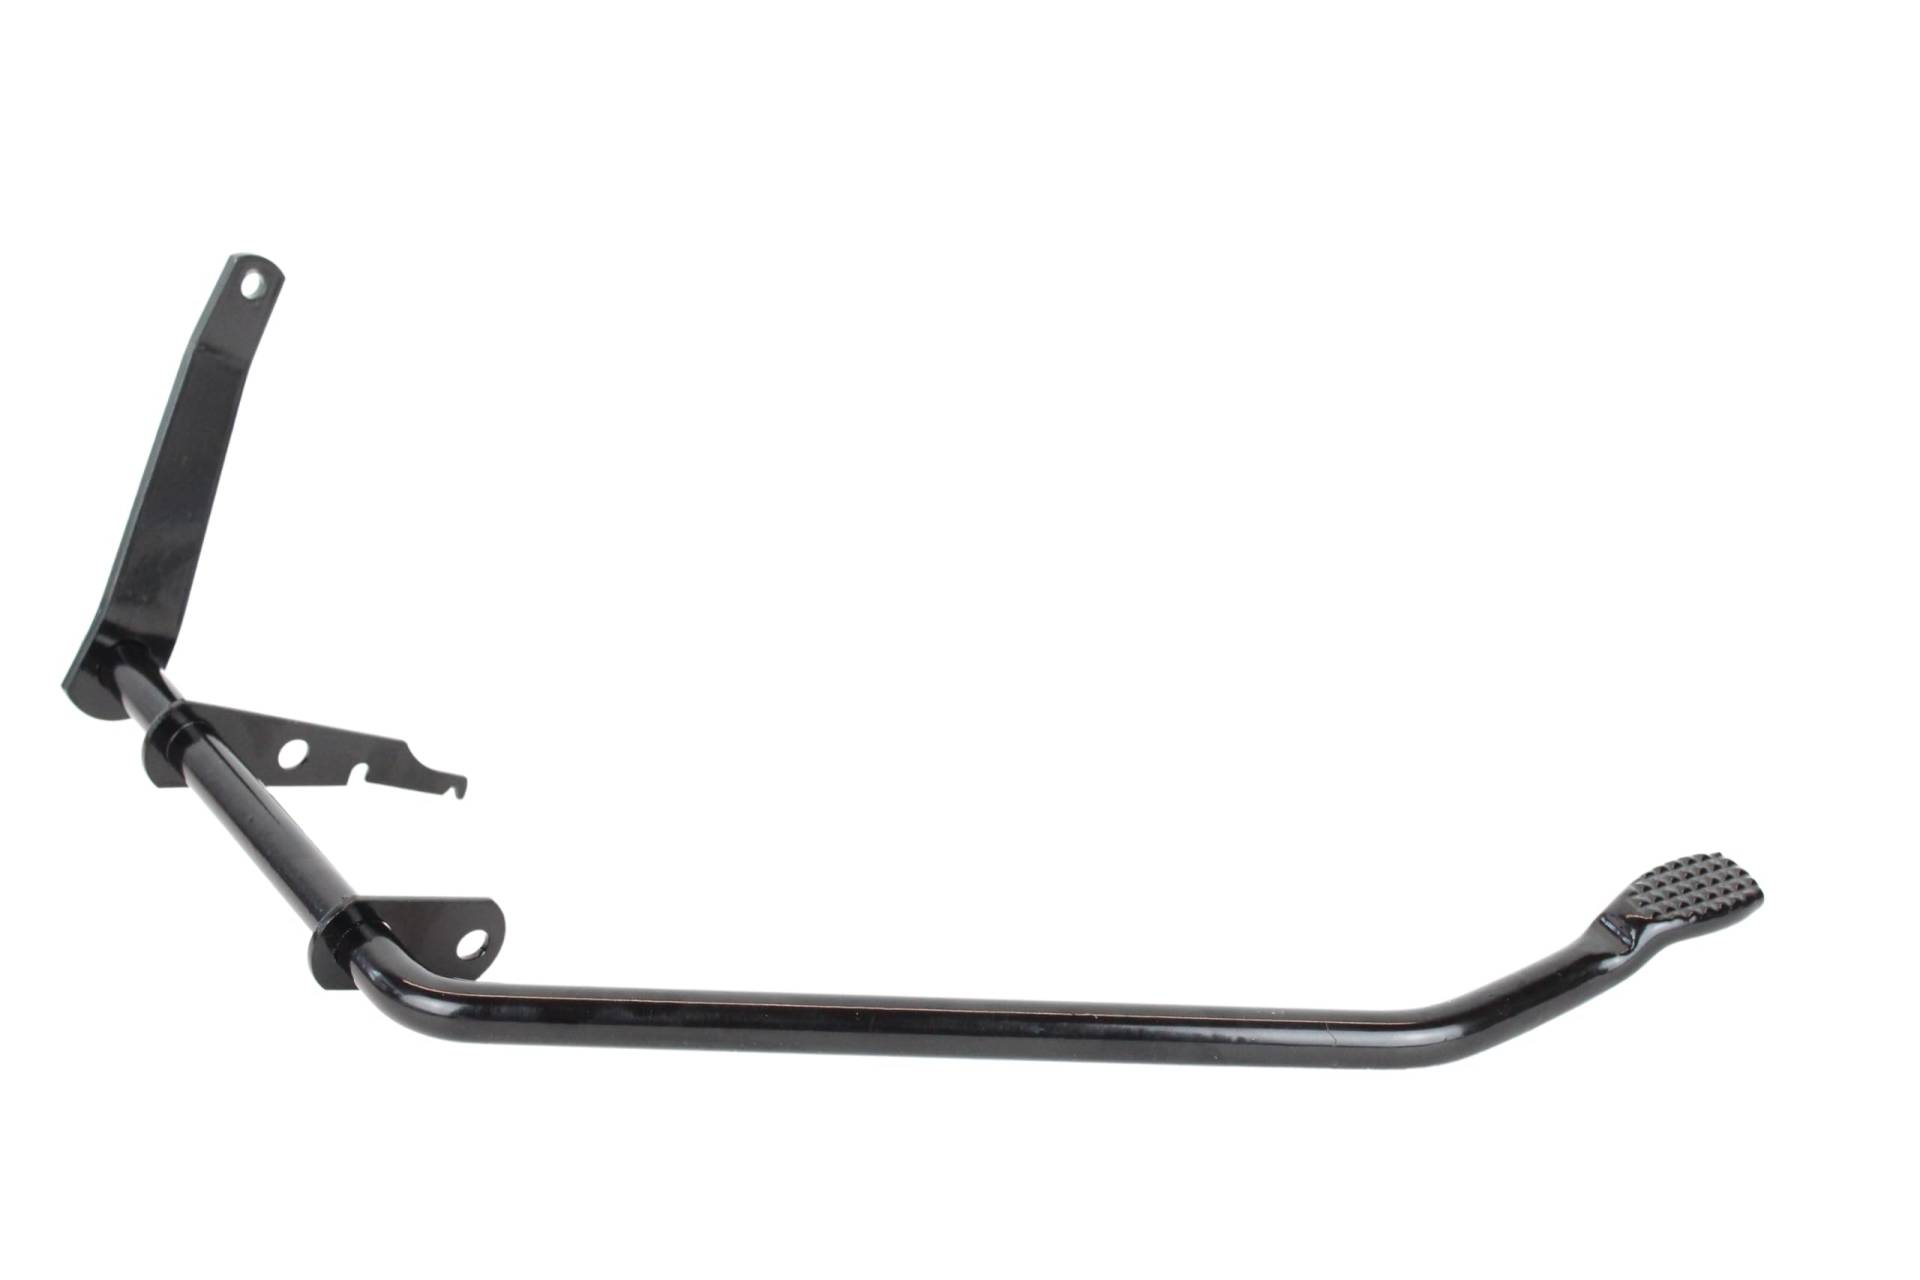 Fußbremshebel mit Aufnahme Bremslichtschalter für Simson S50 S51 S70 Enduro Bremshebel schwarz grundiert von BISOMO